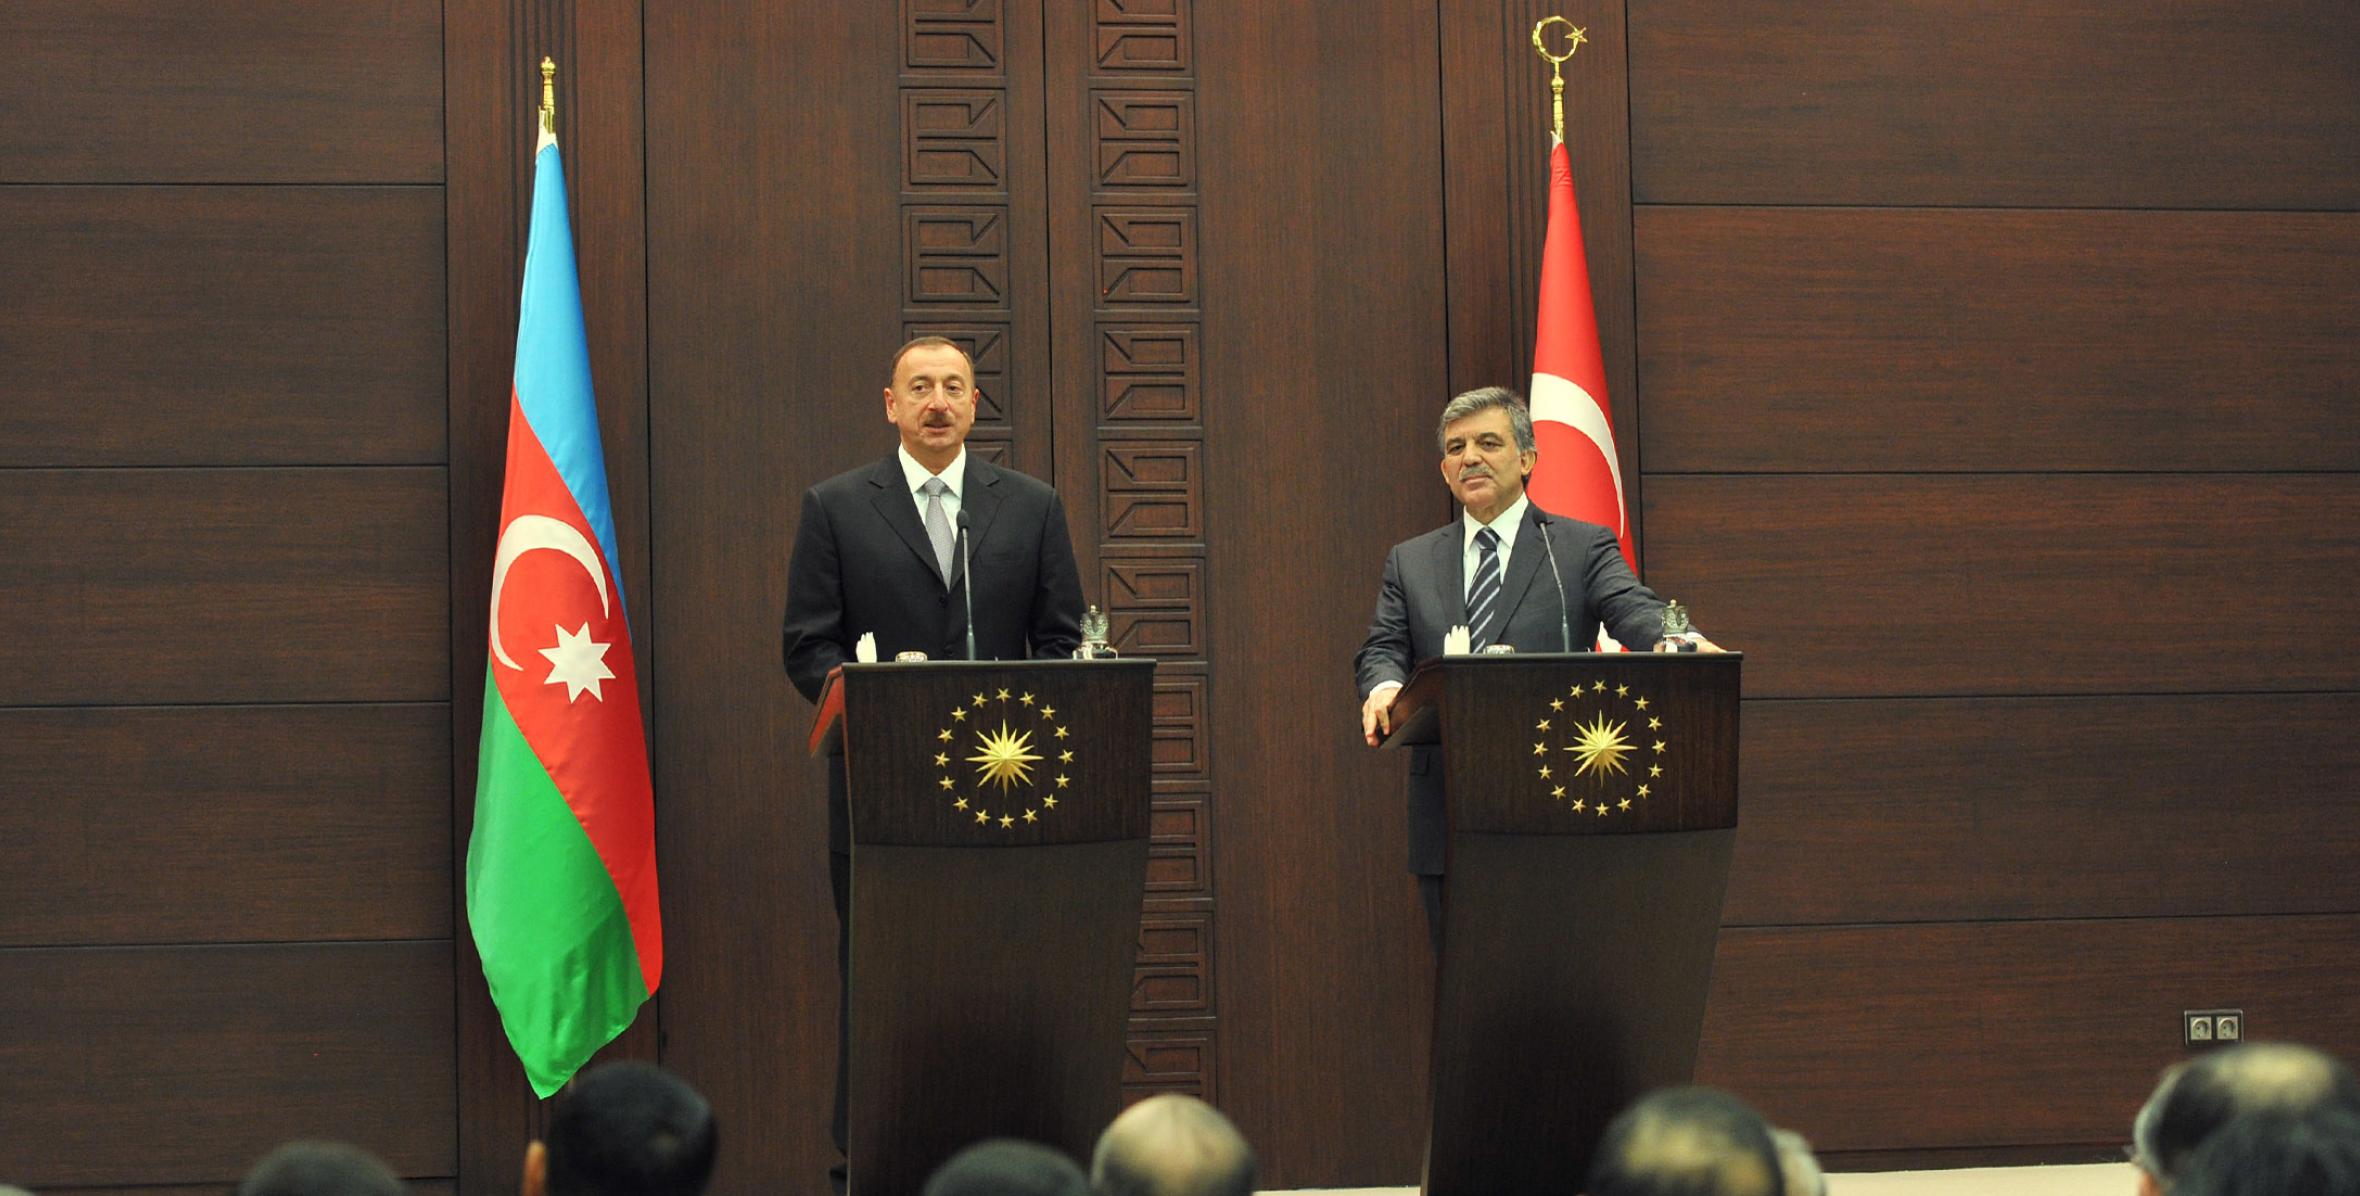 İlham Əliyev və Prezident Abdullah Gül mətbuata bəyanatlarla çıxış etmişlər